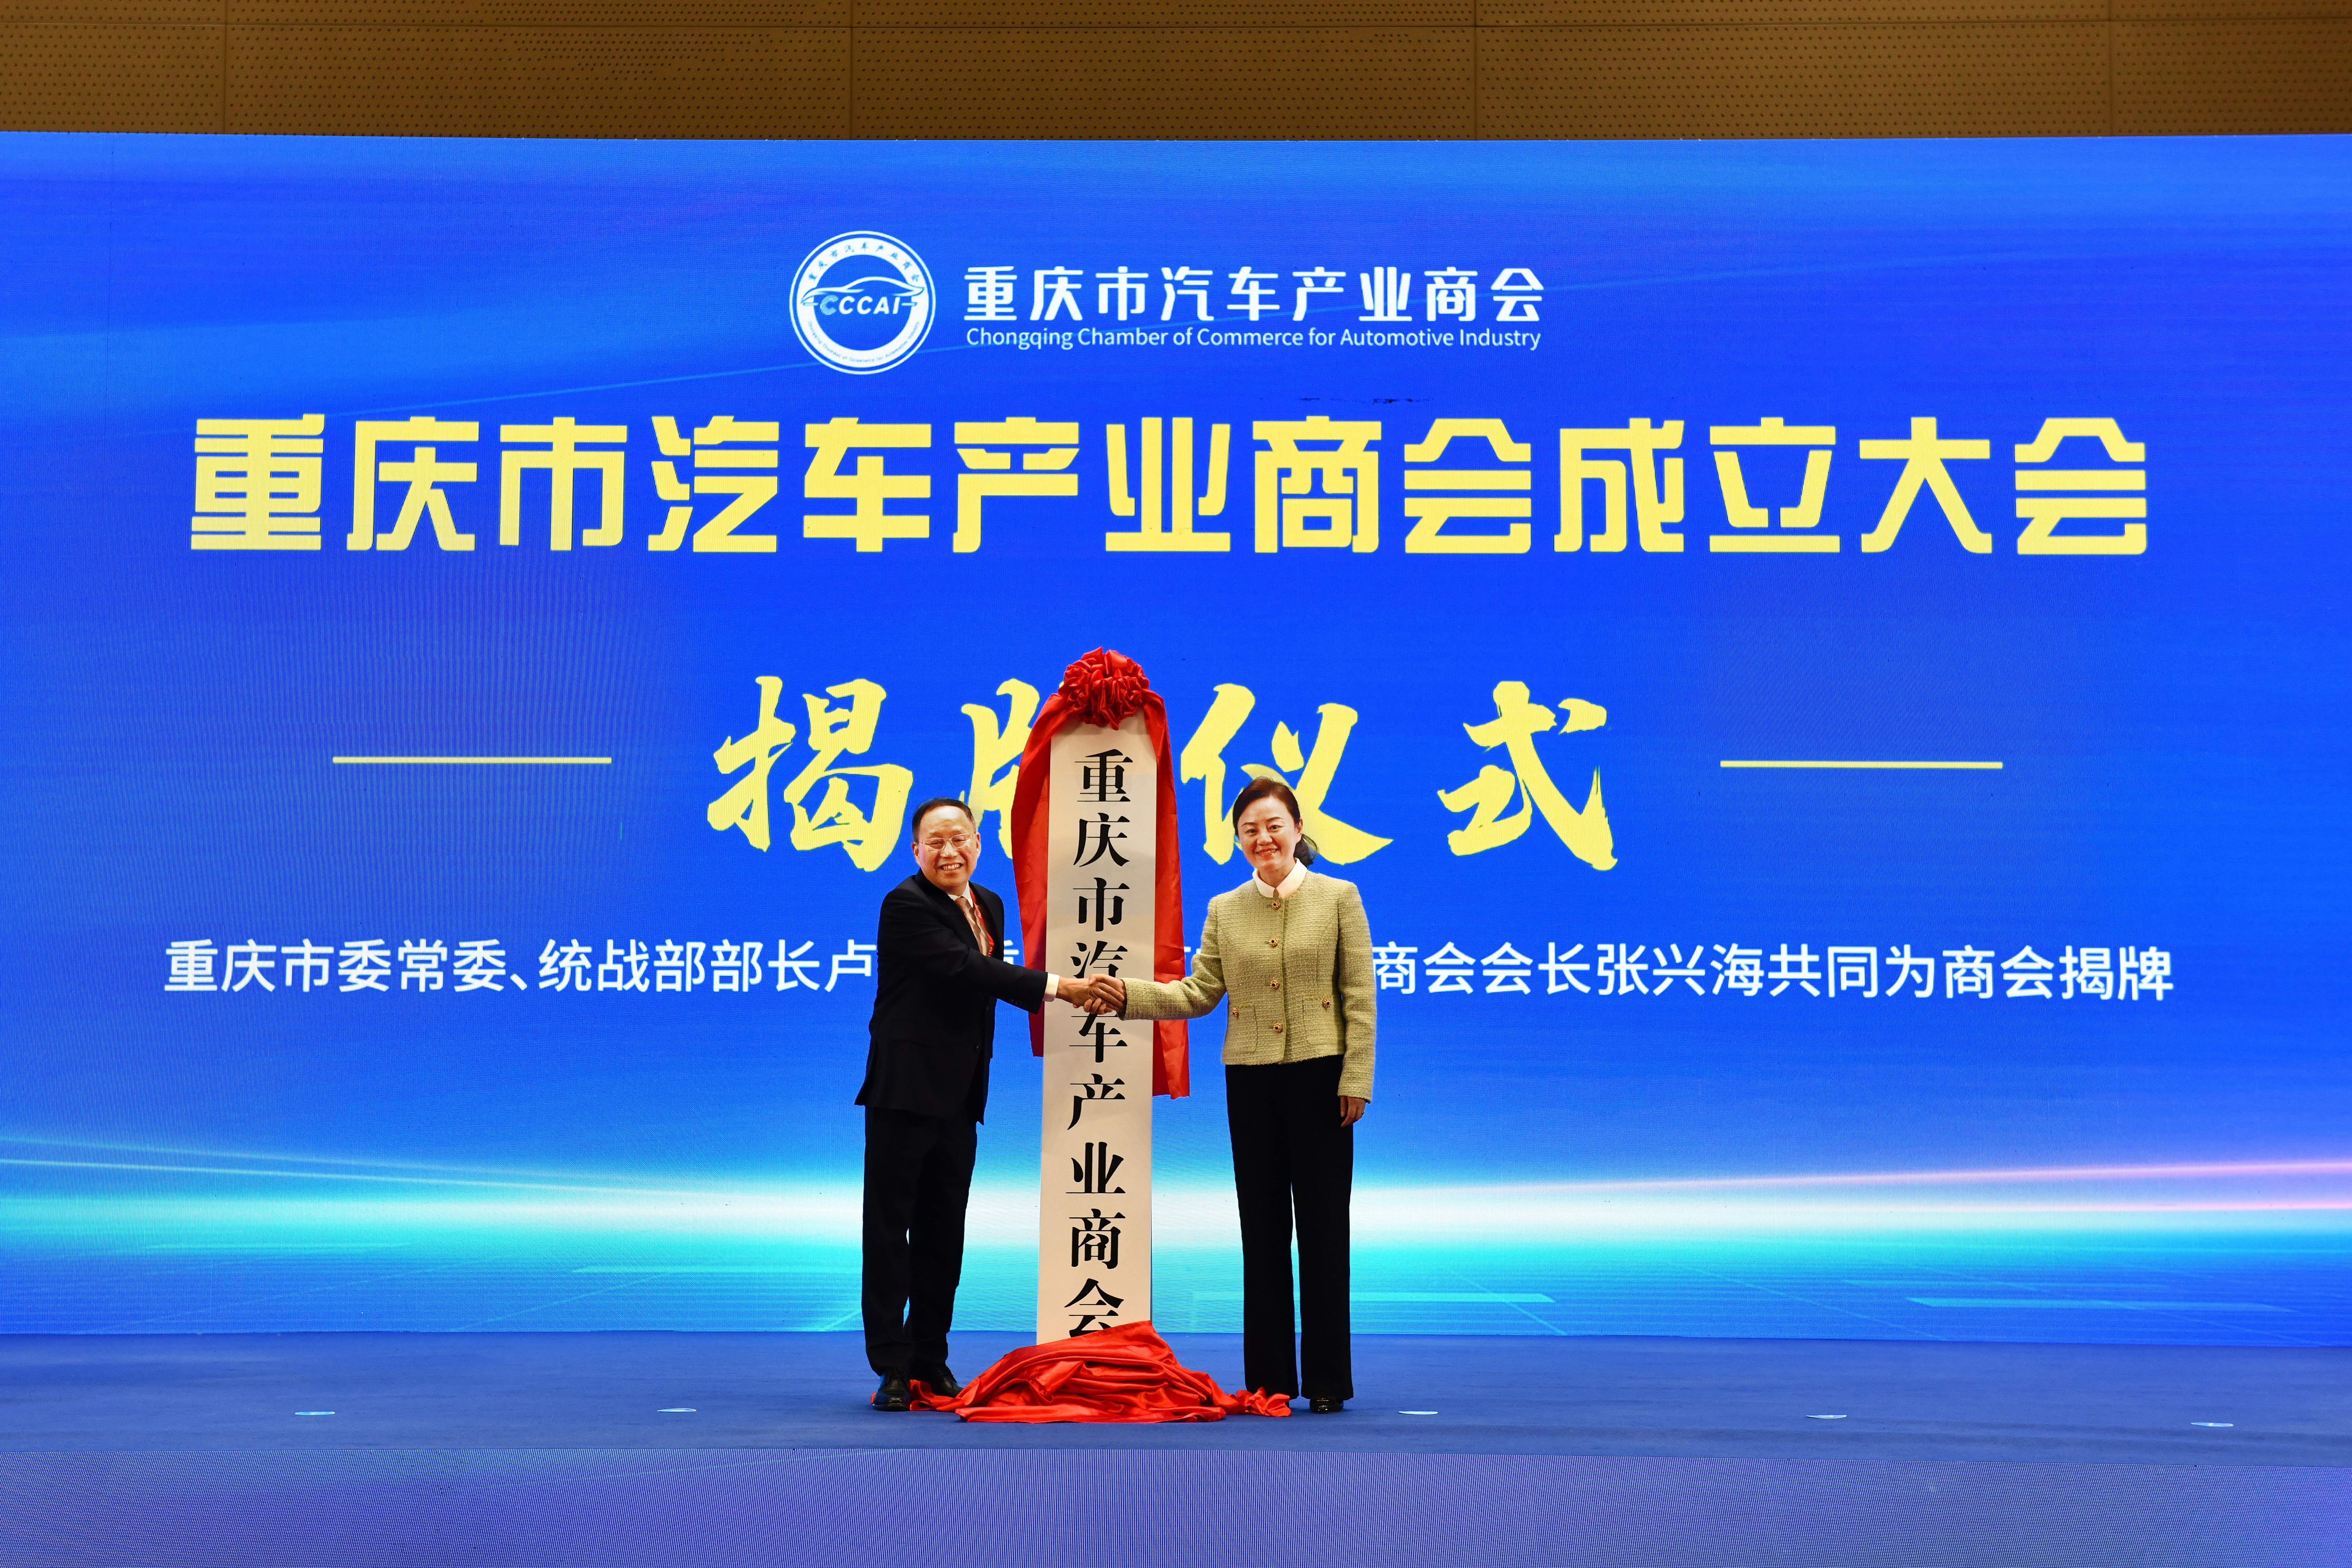 重庆市汽车产业商会成立 张兴海任首任会长